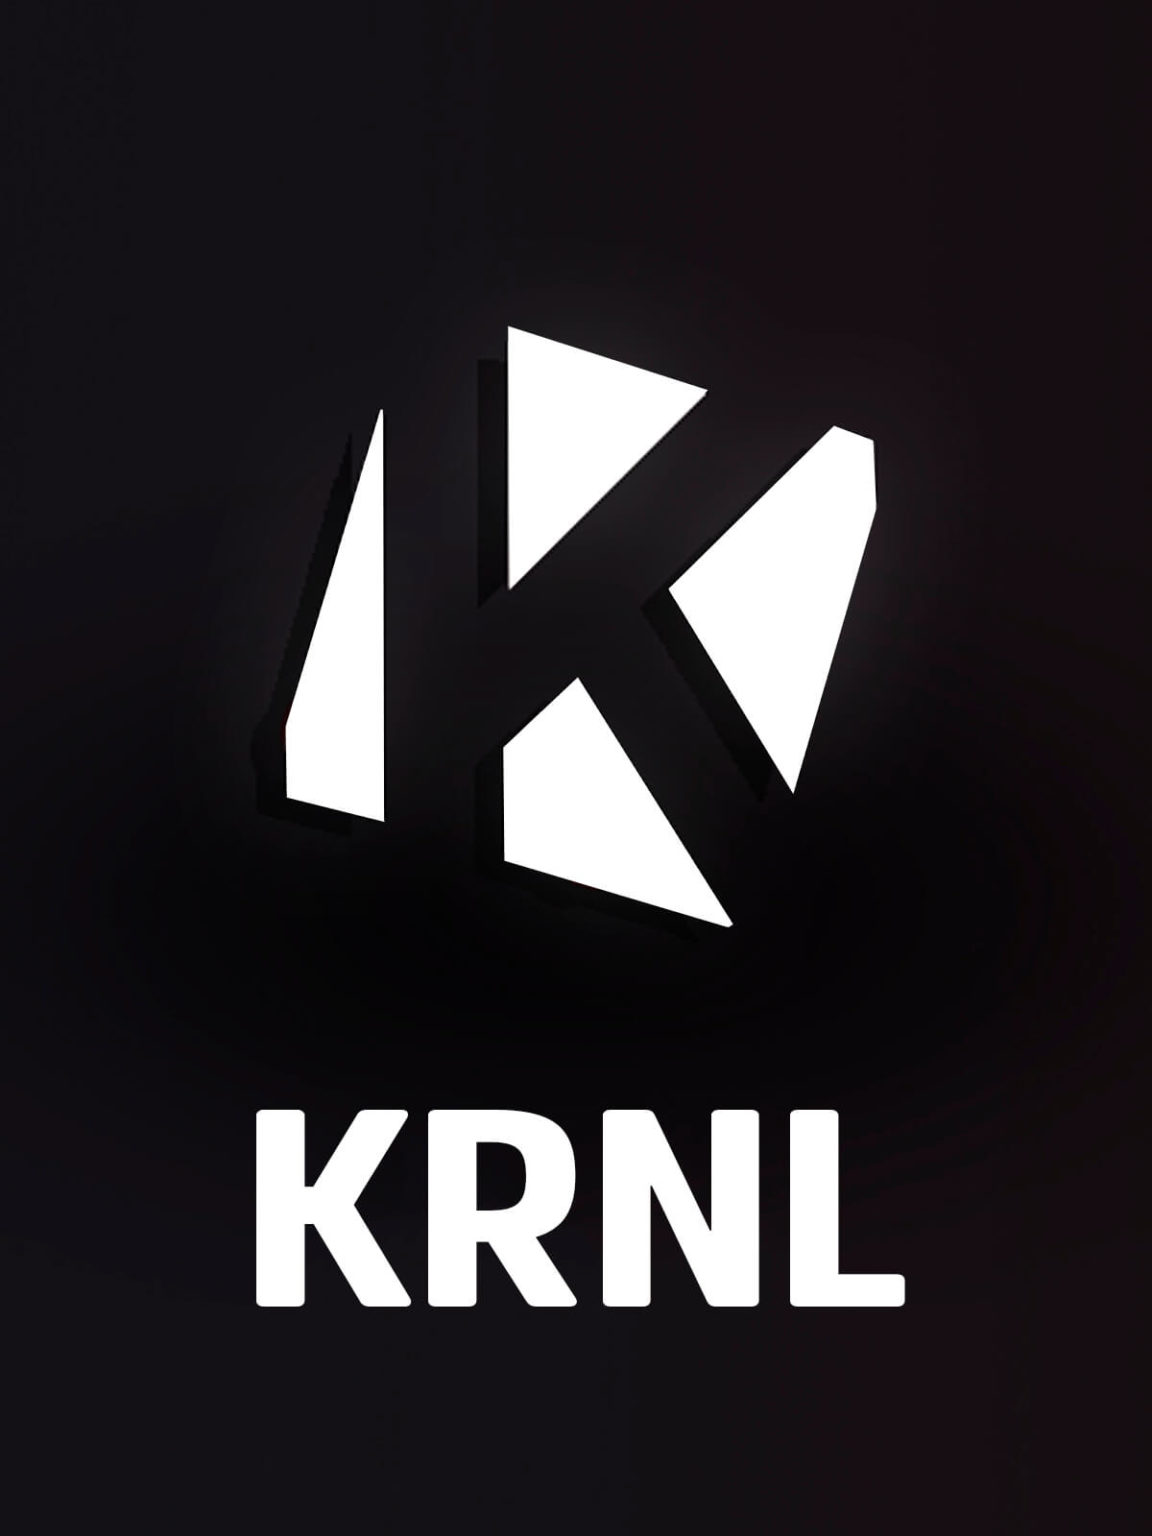 Help how do I fix this : r/Krnl